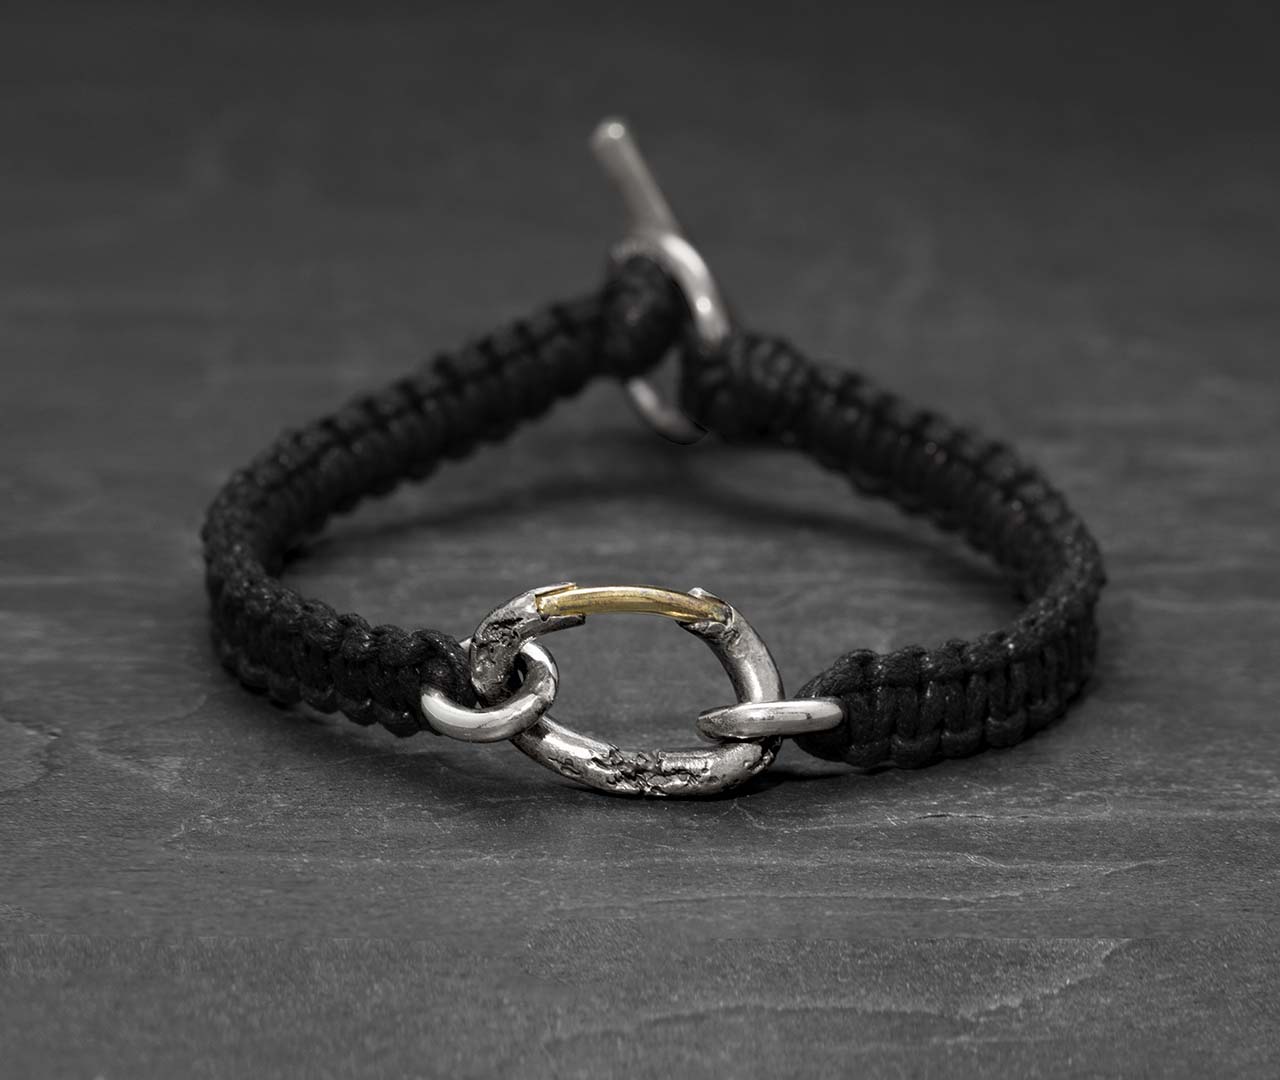 Chain links macrame bracelet